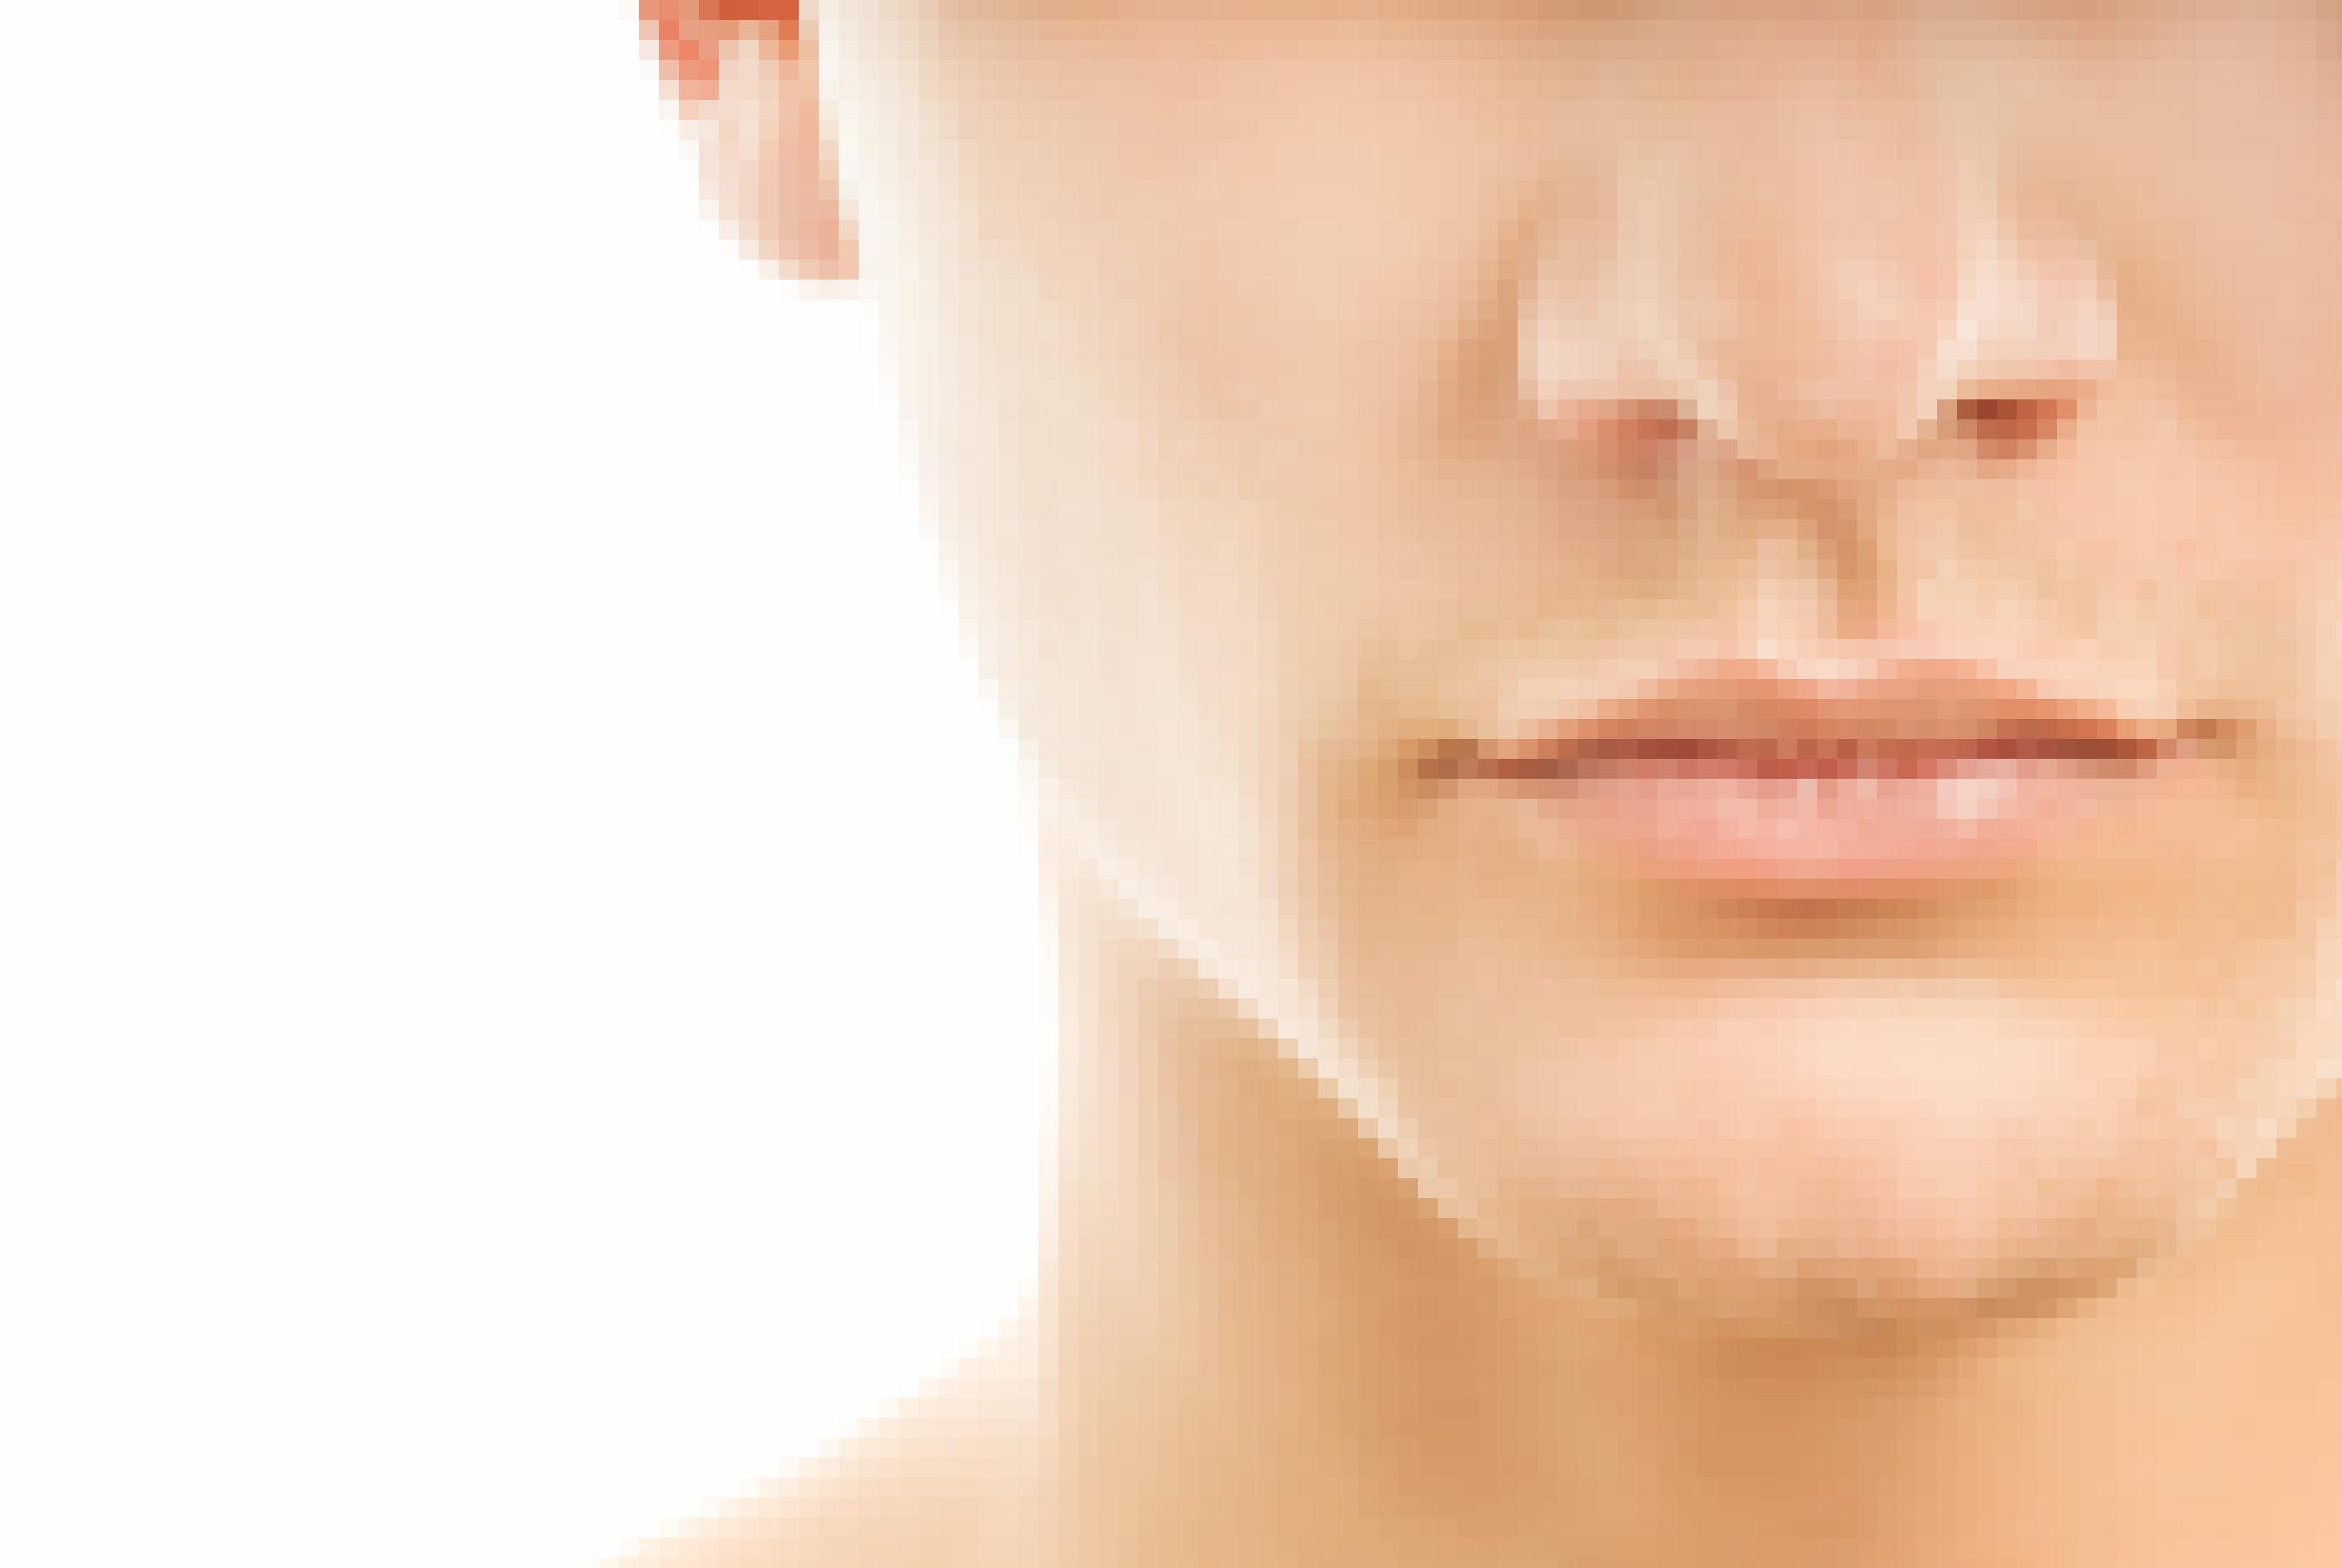 Nahaufnahme eines männlichen Gesichts, das im Ausschnitt Mund, Nase und ein Ohr zeigt.